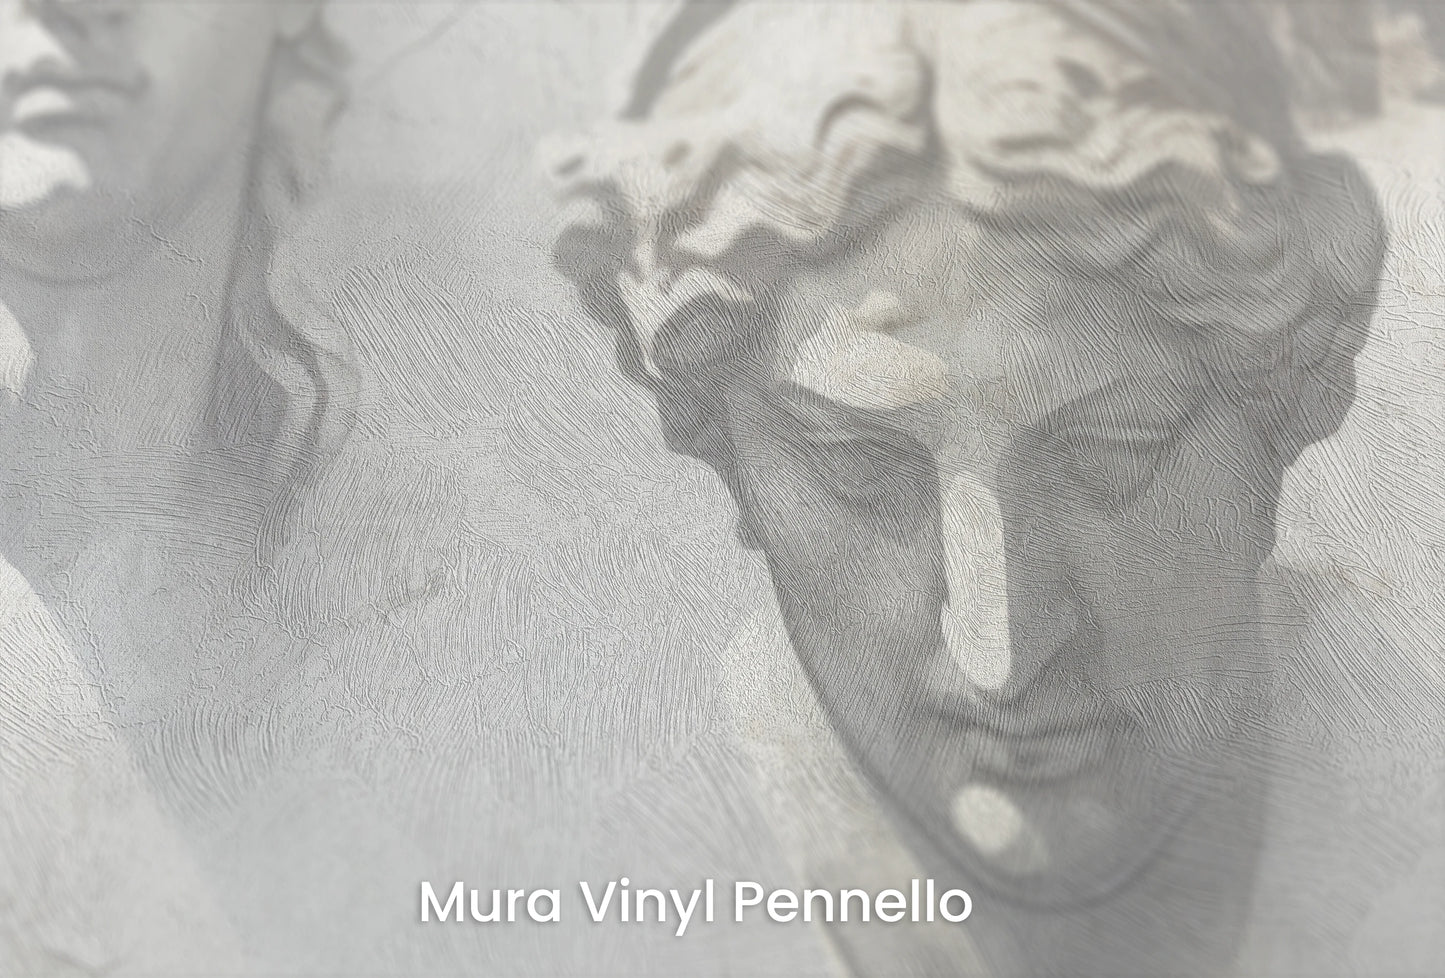 Zbliżenie na artystyczną fototapetę o nazwie The Muses' Grace na podłożu Mura Vinyl Pennello - faktura pociągnięć pędzla malarskiego.